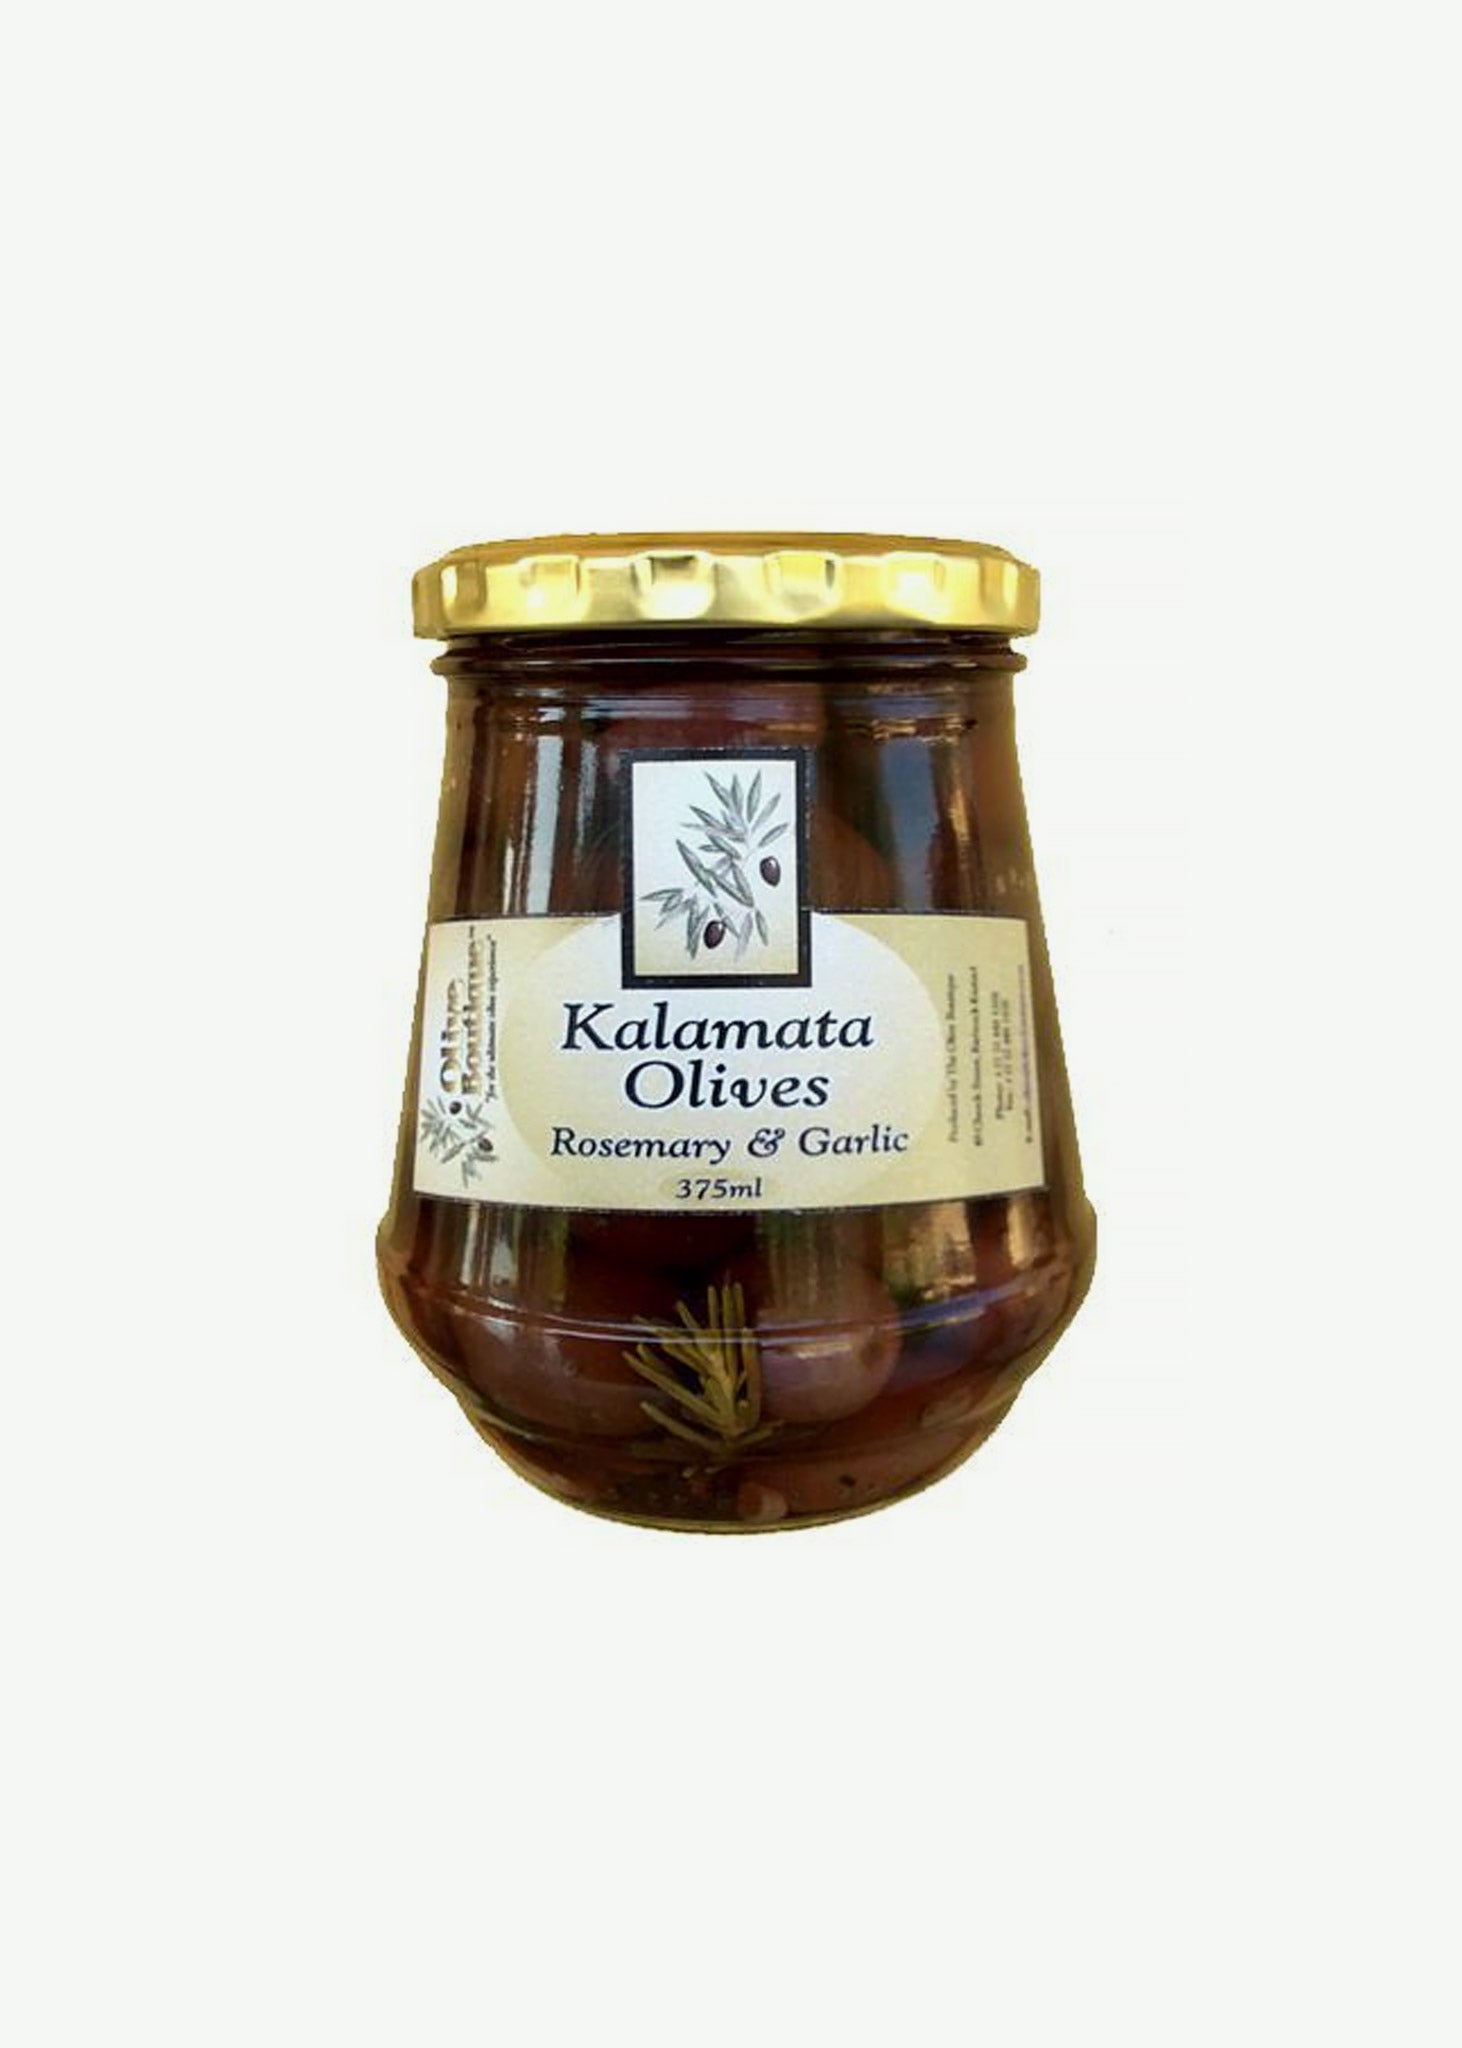 Kalamata Black Olives with Rosemary and Garlic  375ml